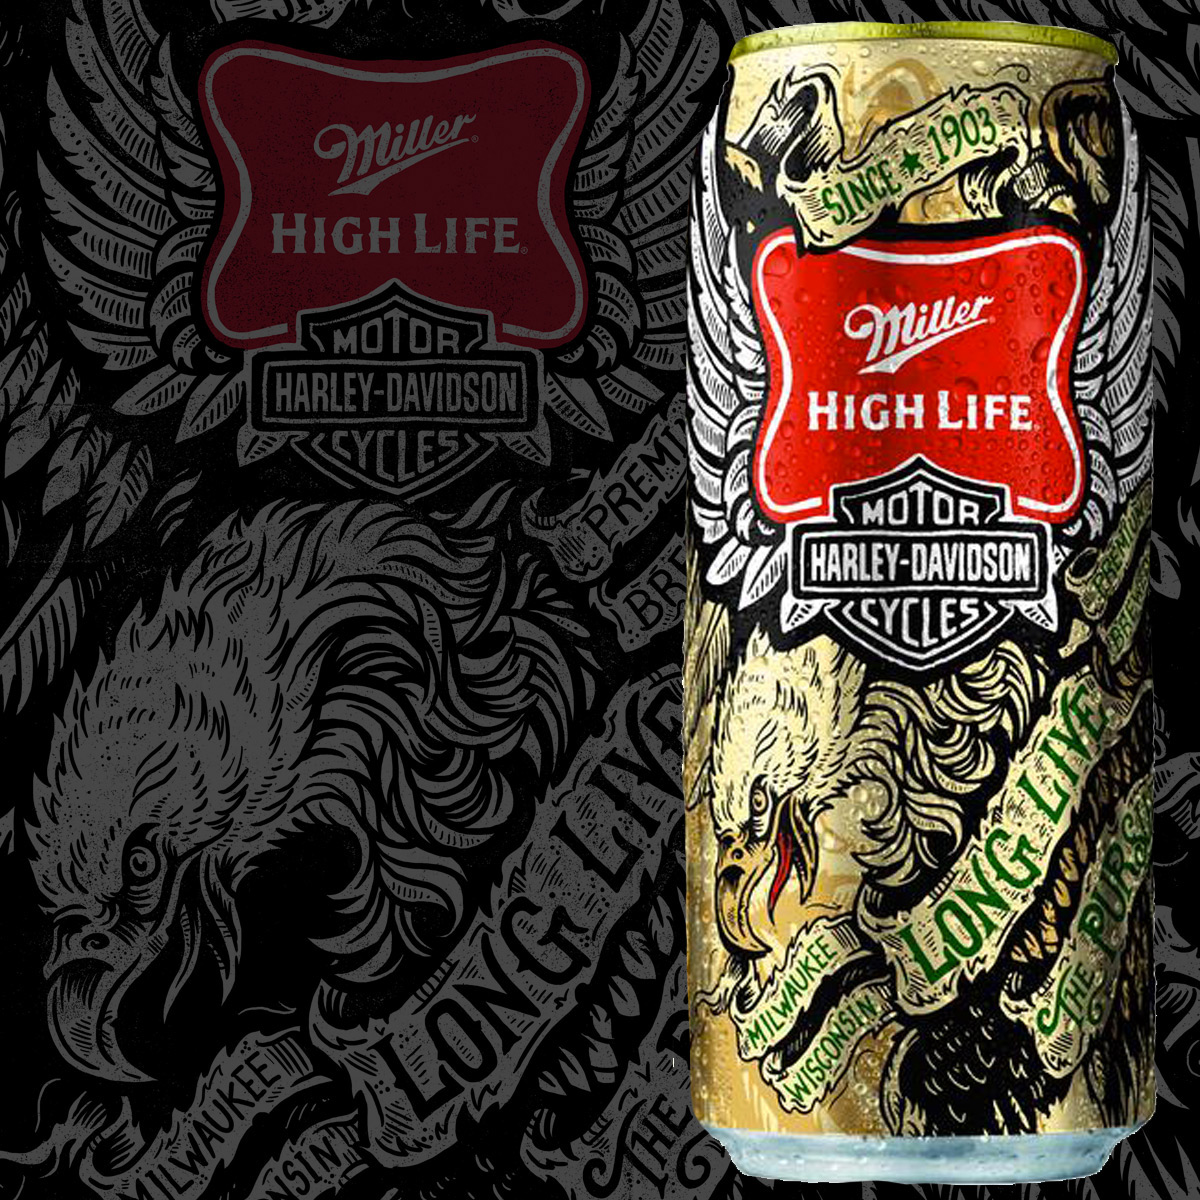 miller Miller High Life Harley Davidson Artist Series design americana beer eagle